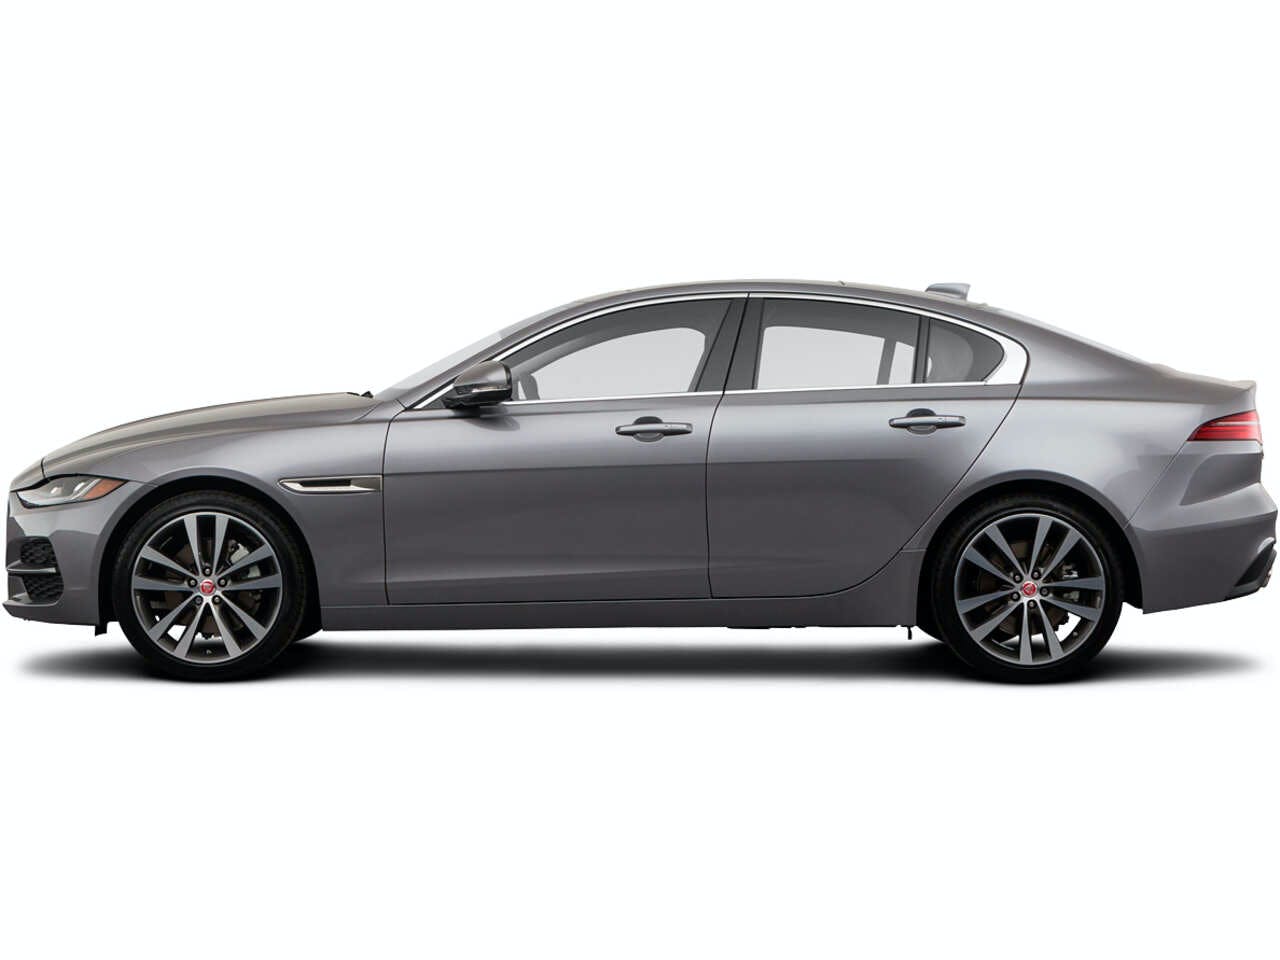 Jaguar XE exterior - Side Profile